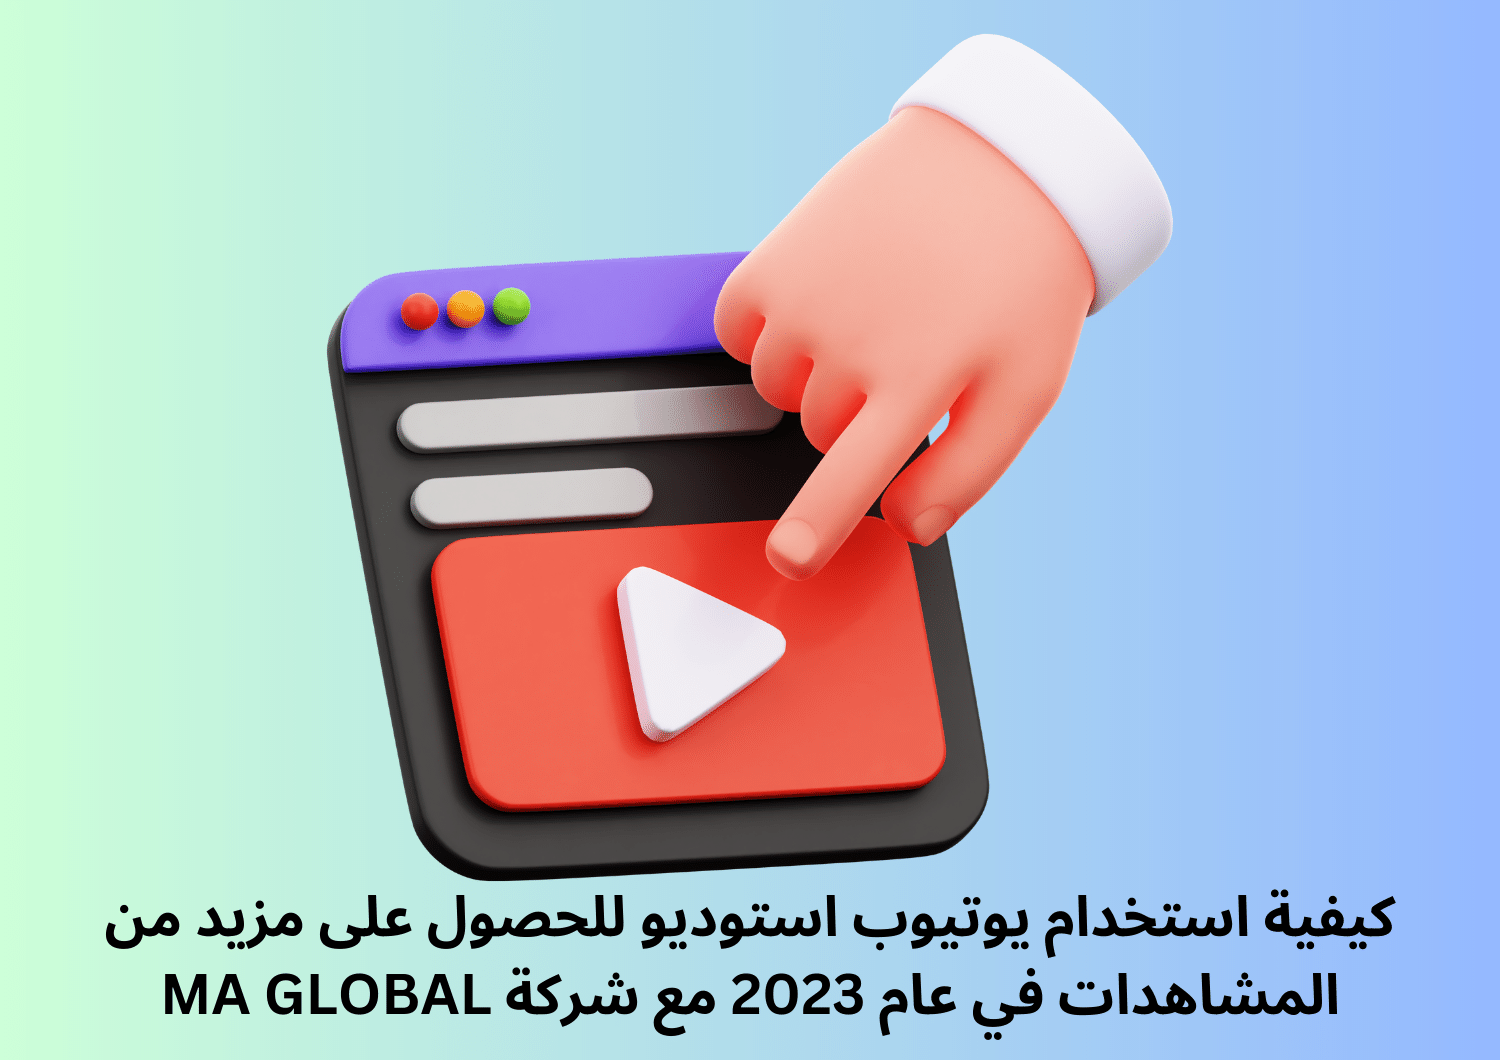 كيفية استخدام يوتيوب استوديو للحصول على مزيد من المشاهدات في عام 2023 مع شركة MA GLOBAL